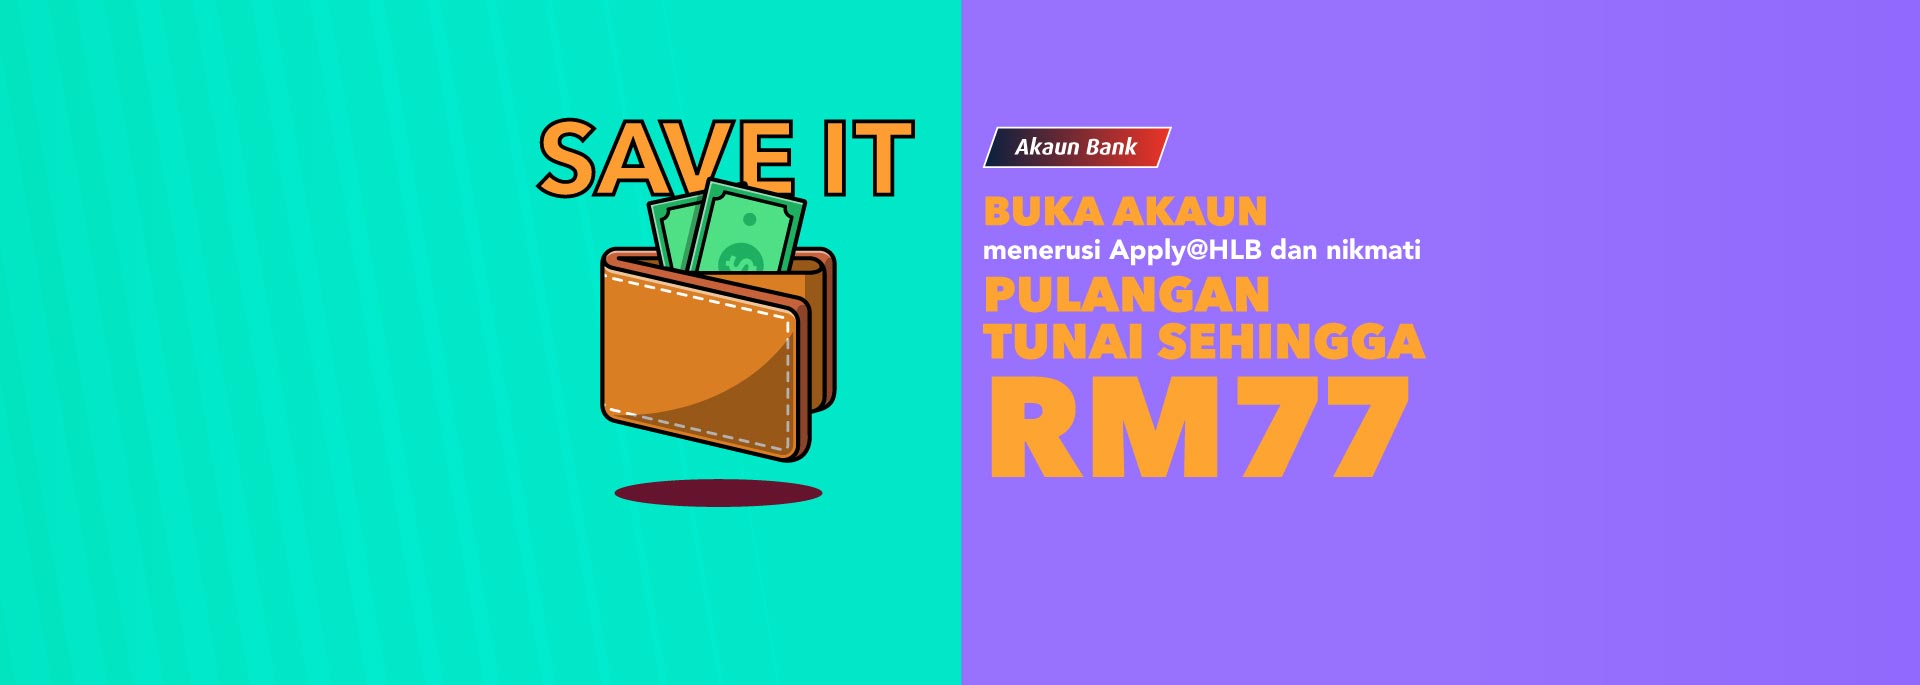 Buka akaun menerusi aplikasi Apply@HLB dan nikmati Pulangan Tunai sehingga RM77